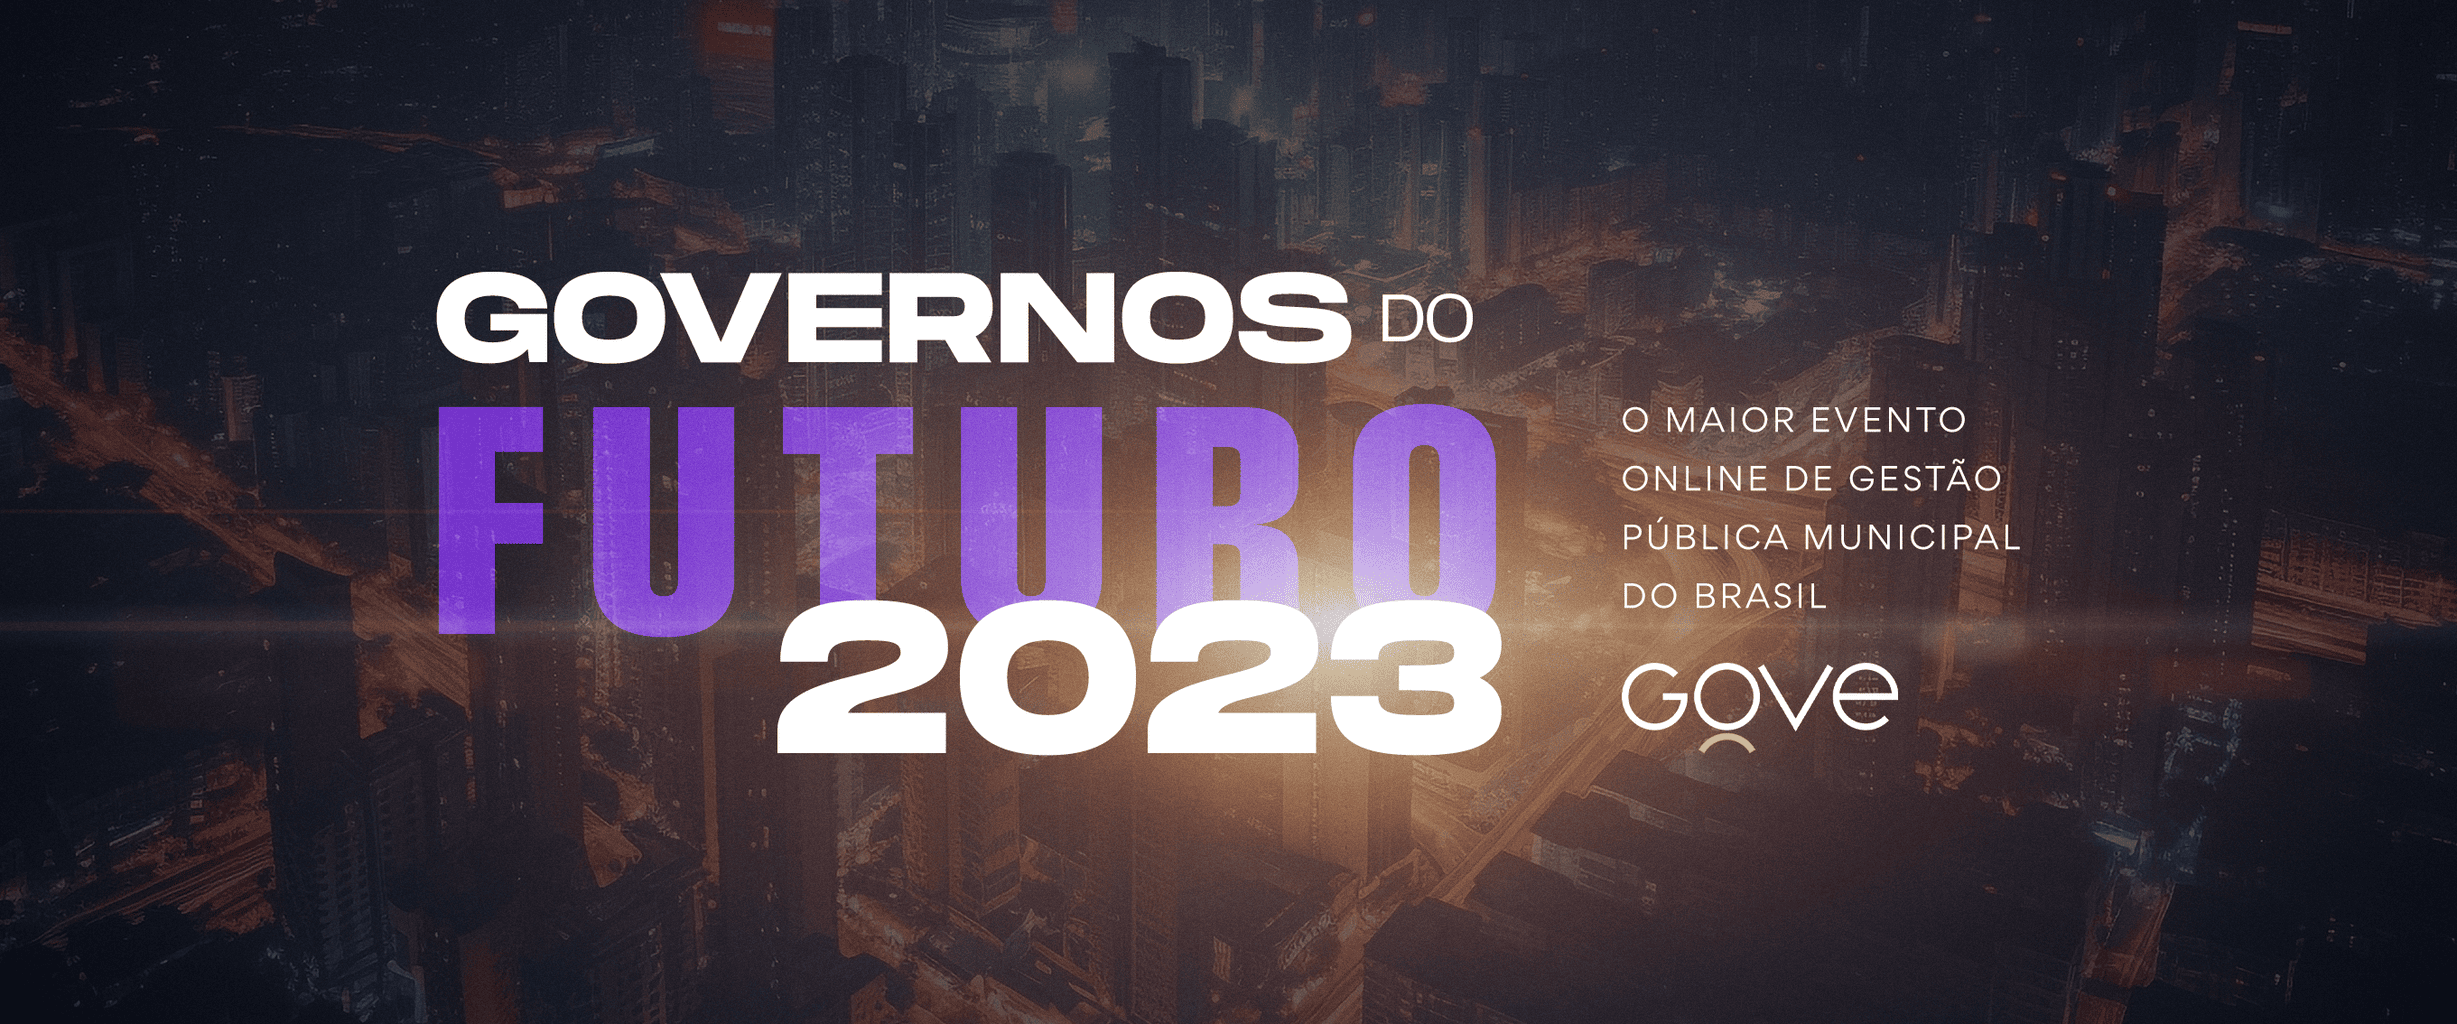 governos-do-futuro-2023